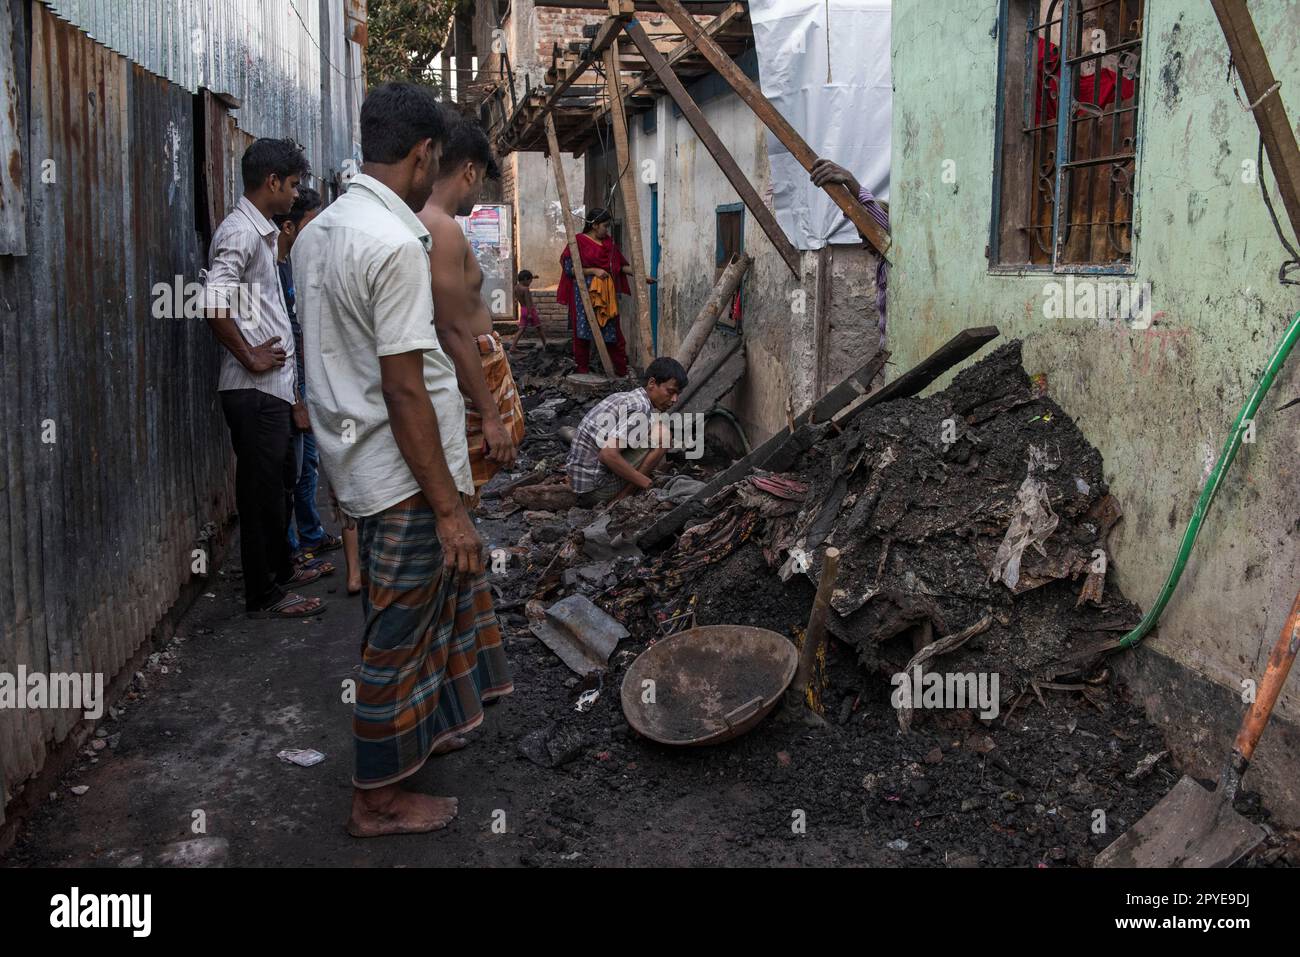 Bangladesch, Dhaka, Korail. Männer machen eine Bestandsaufnahme der Reste eines kürzlichen Feuers. 27. März 2017. Nur redaktionelle Verwendung. Stockfoto